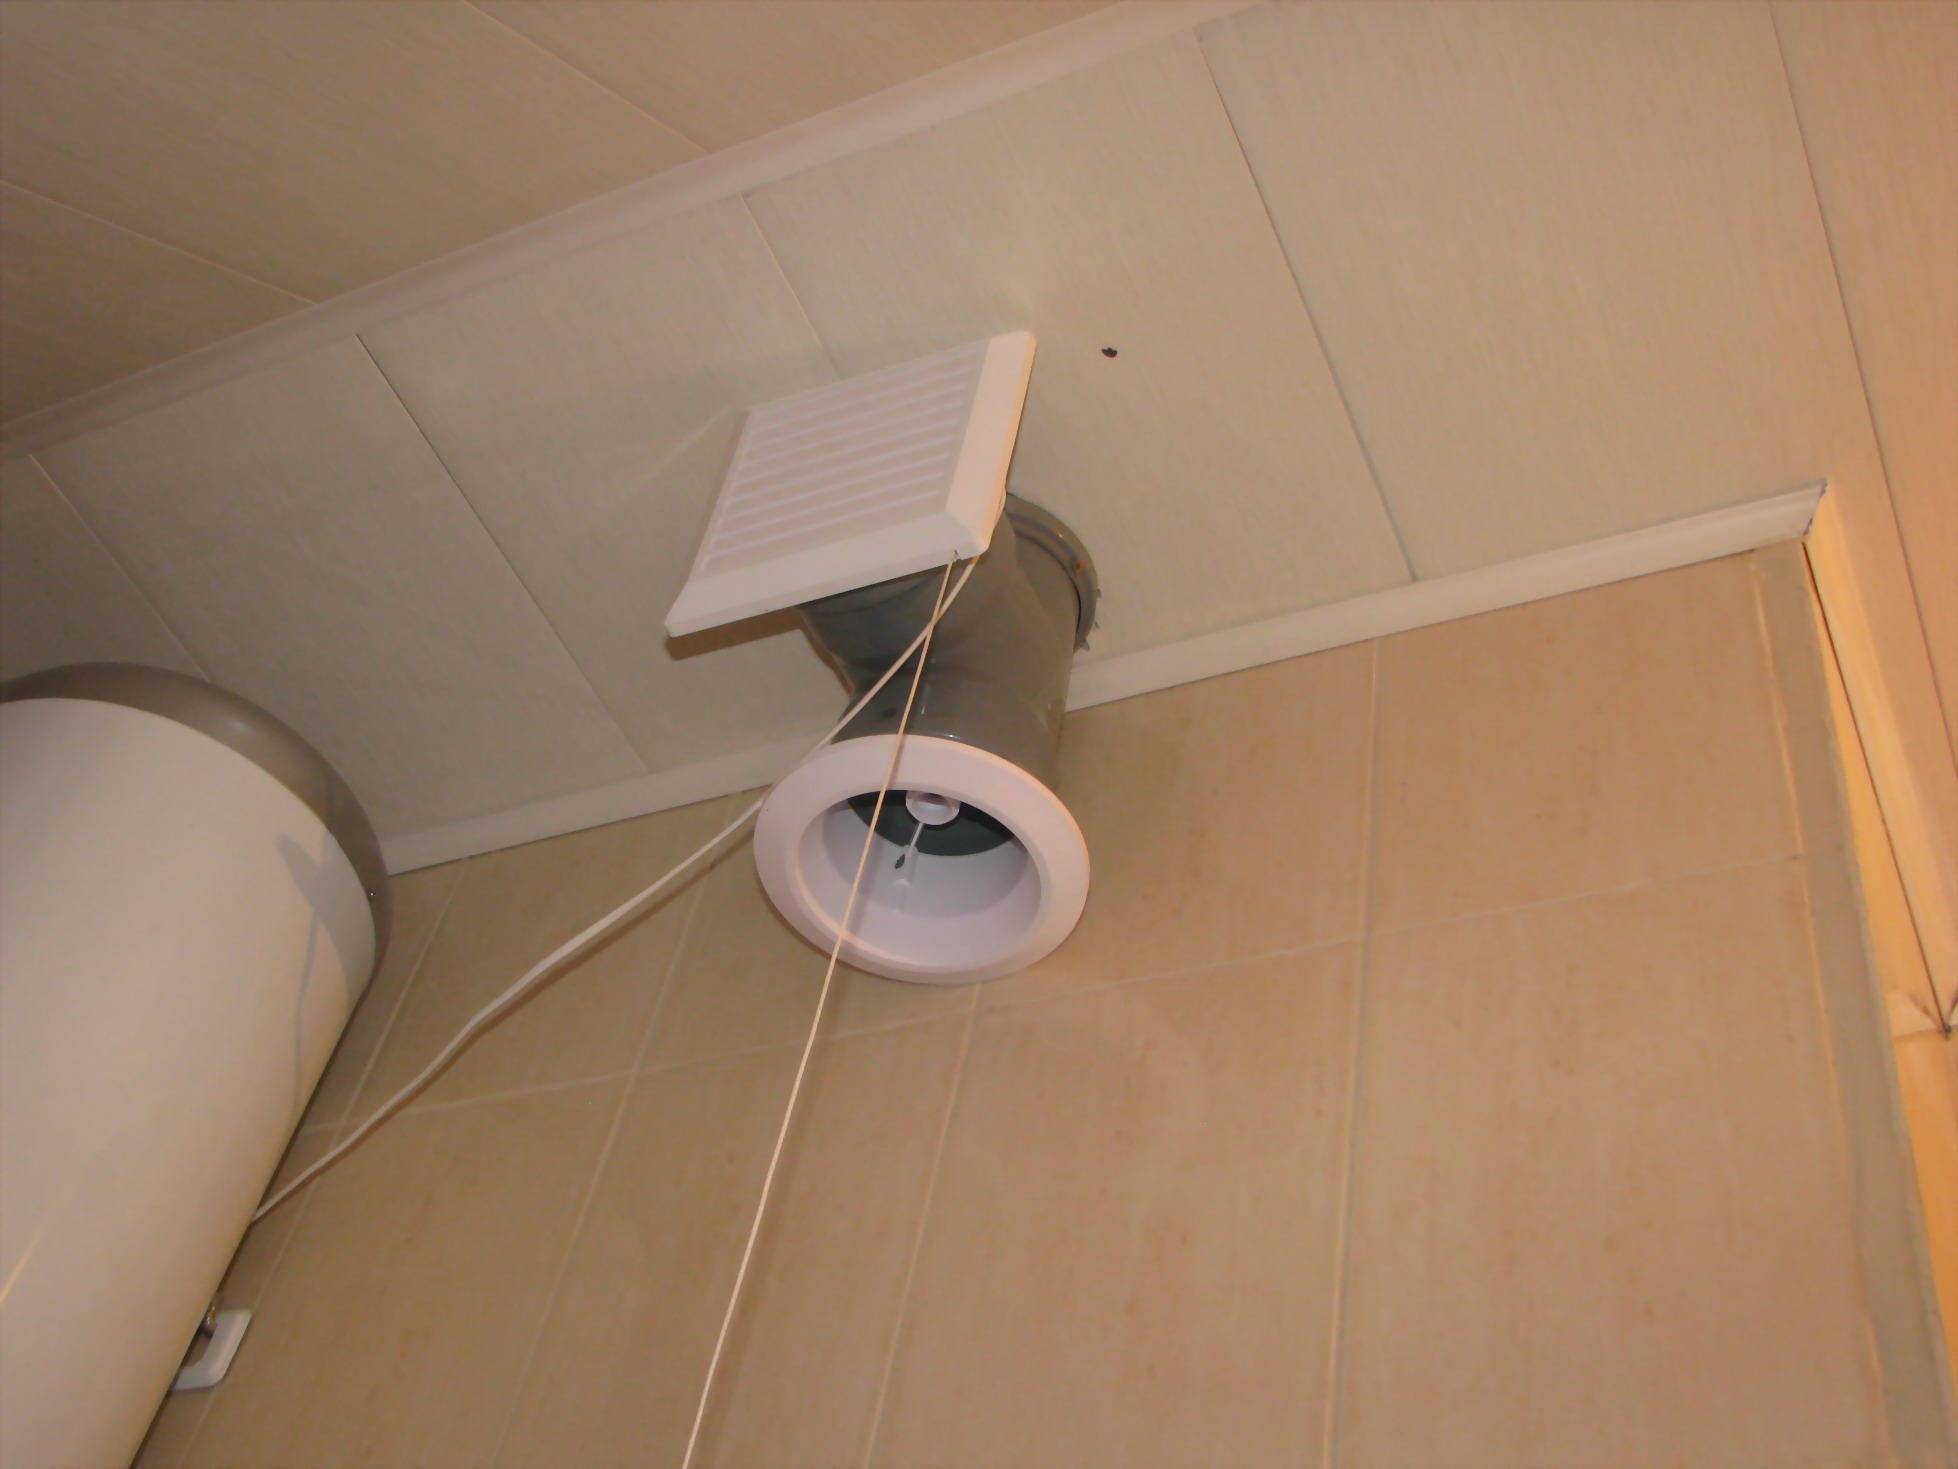 Вентиляция в натяжном потолке на кухне: вытяжка в навесном в ванной и проходка, как сделать